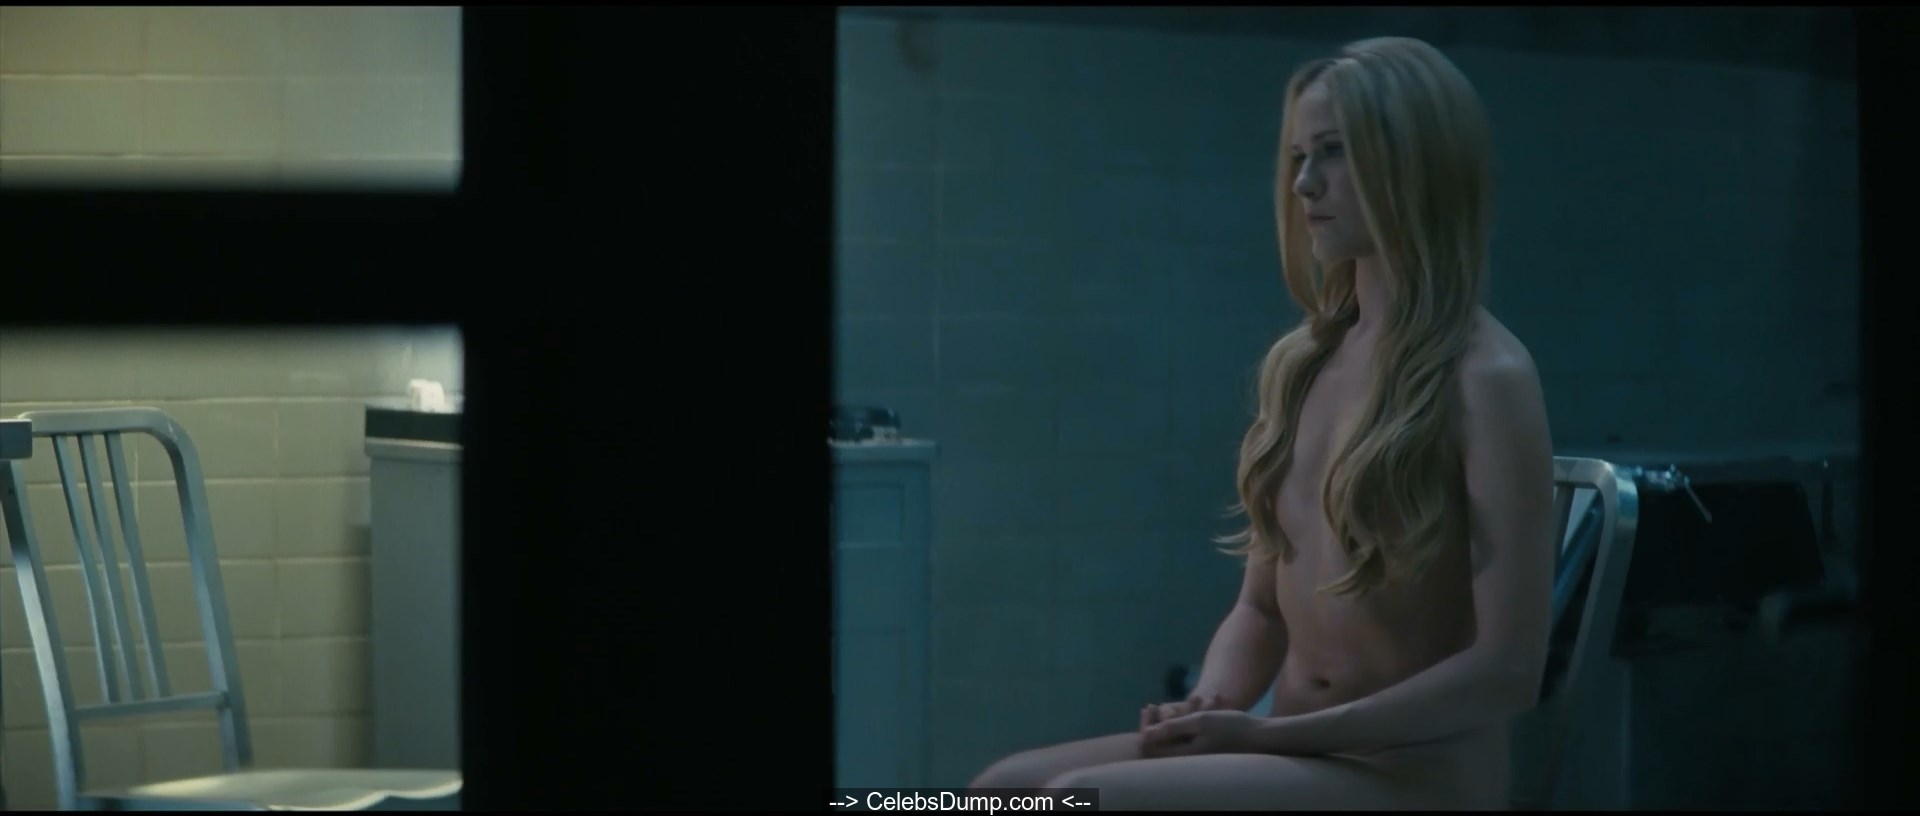 Hbo's Westworld Star Evan Rachel Wood Says Nudity Is Normal On Set